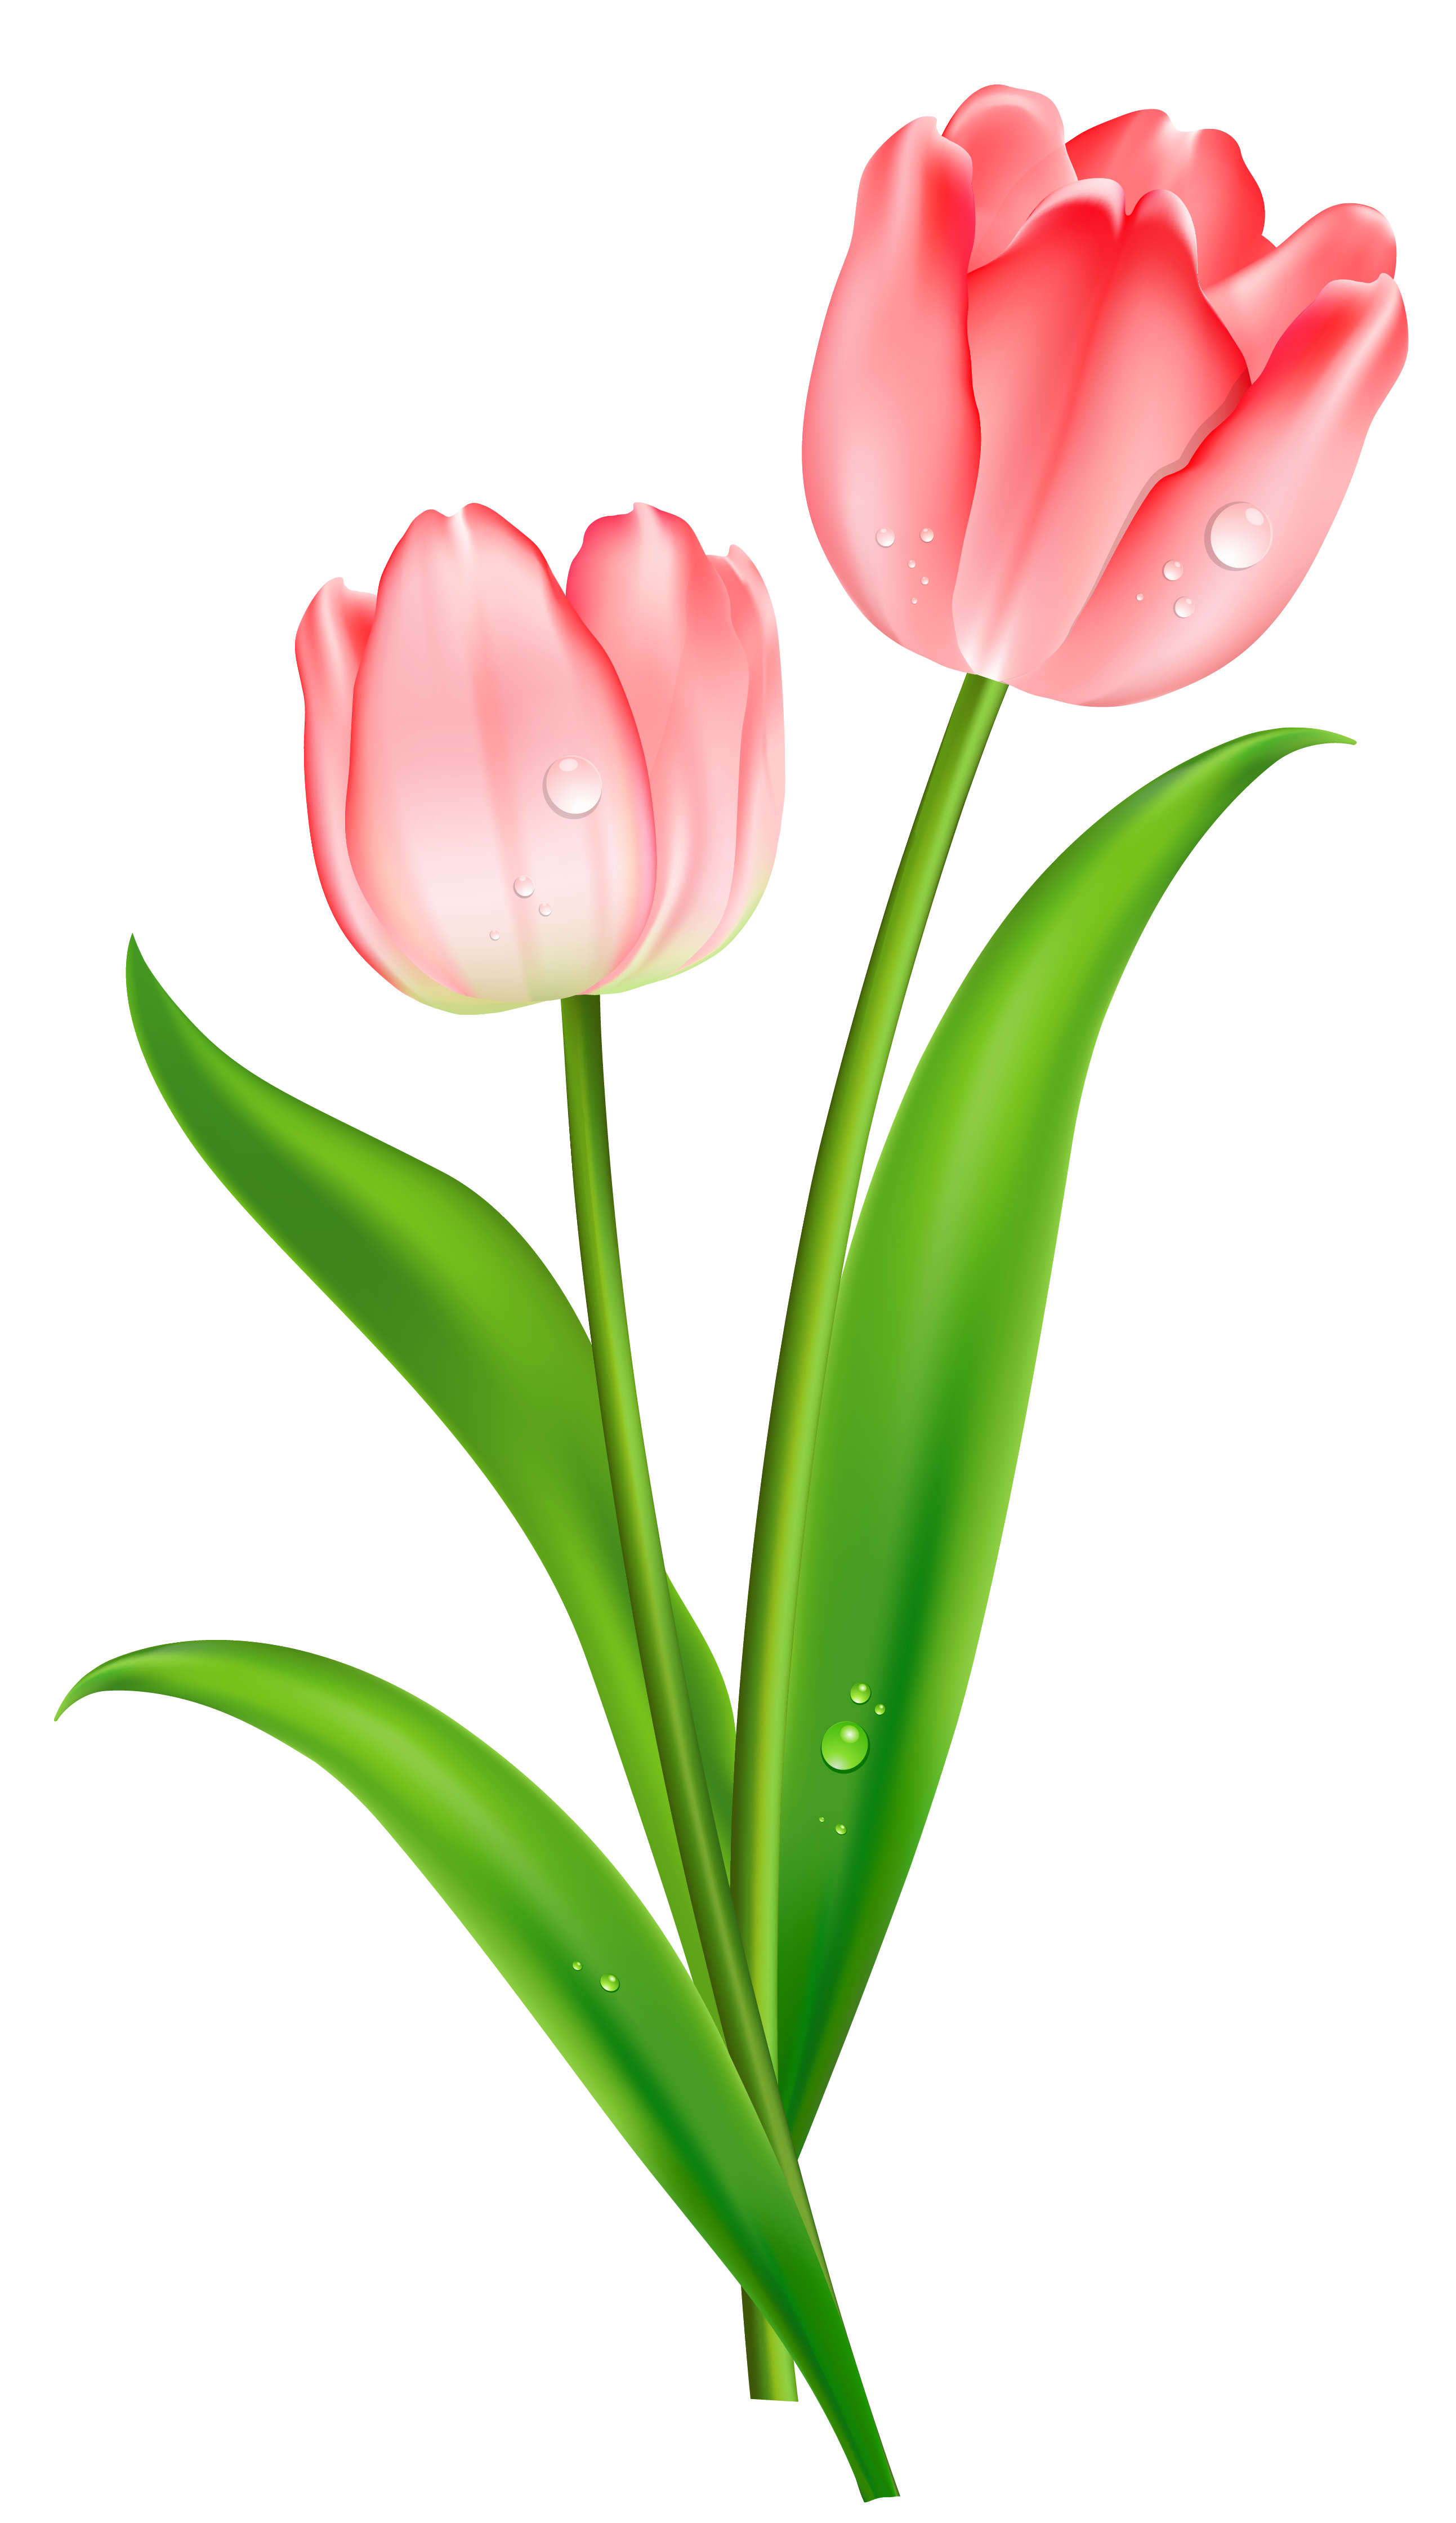 tulip clipart